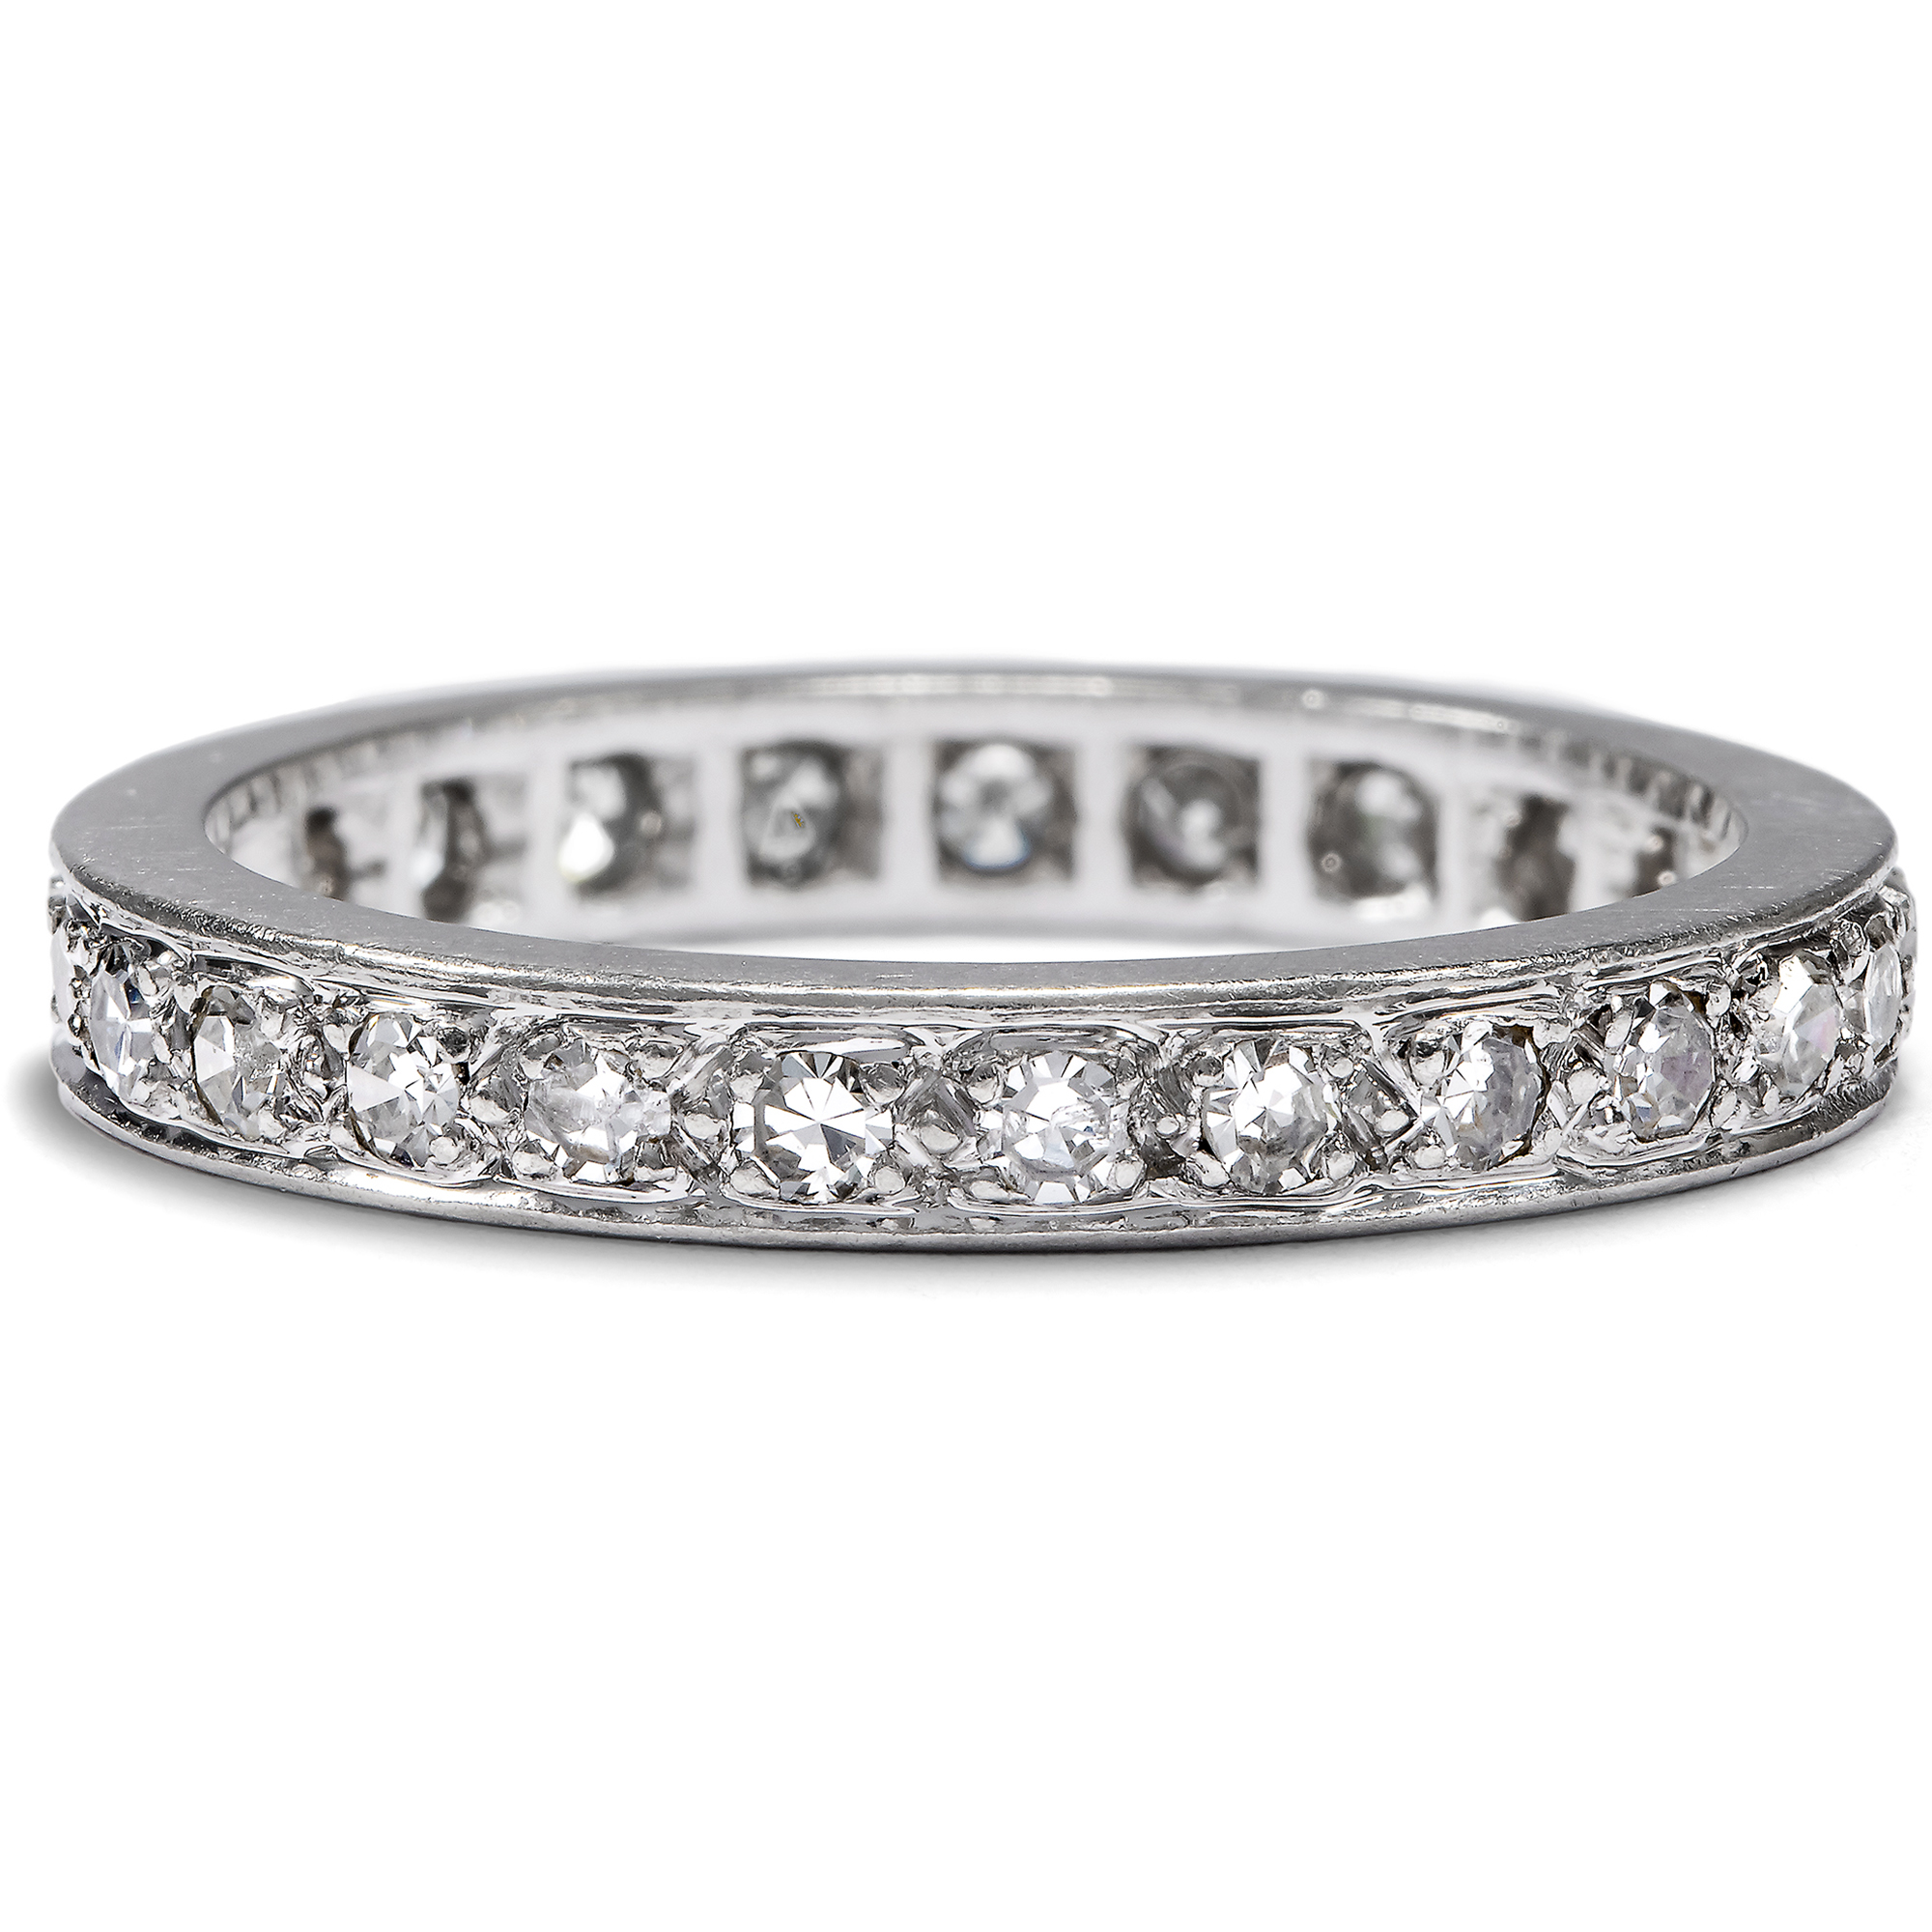 Vintage Memory-Ring mit 0,62 ct Diamanten in Platin, RW 53, Paris um 1960